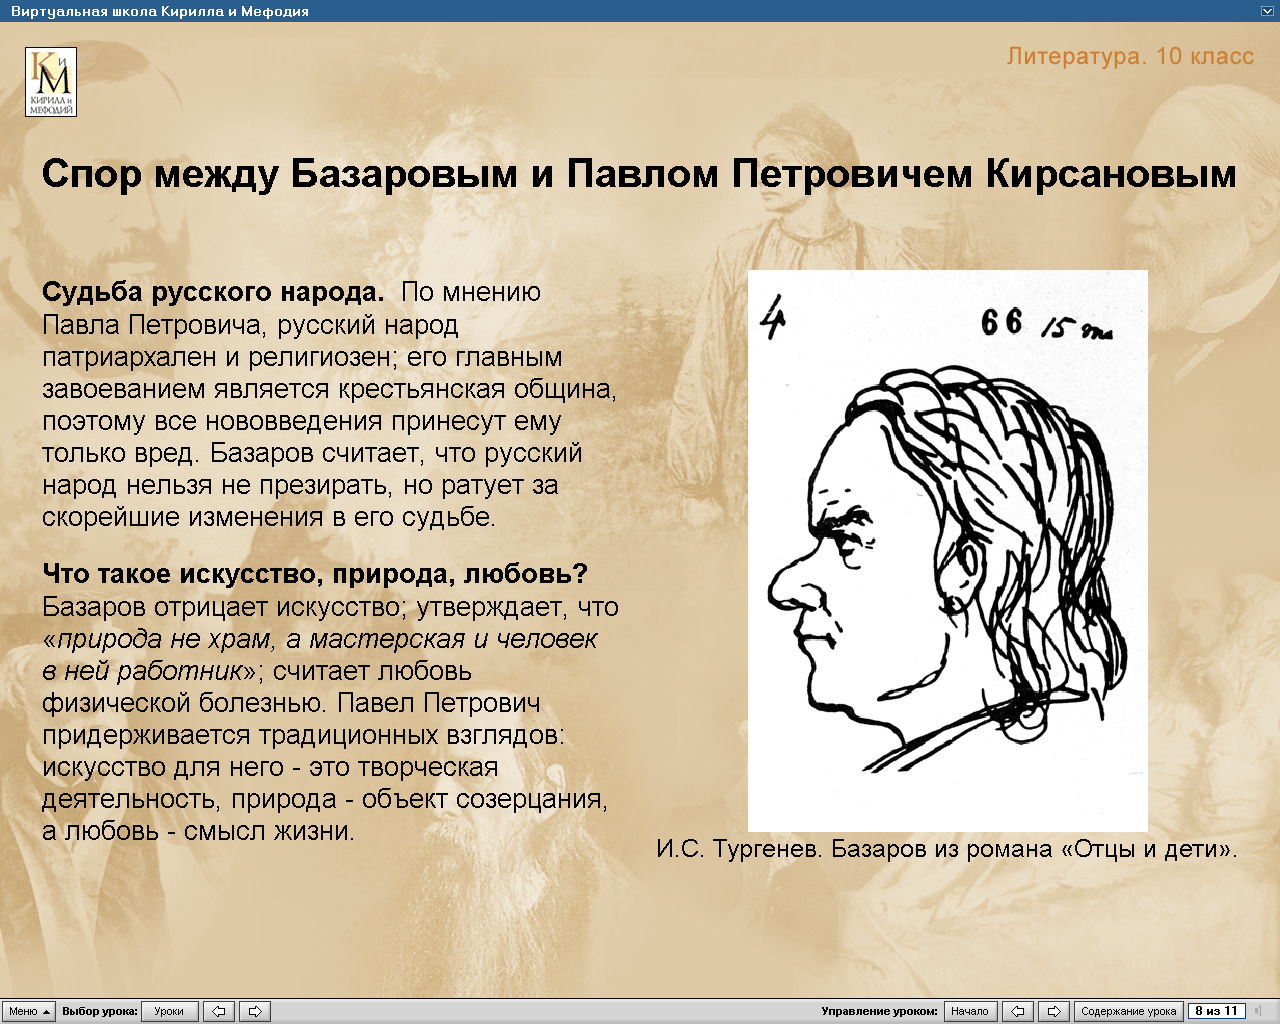 Сочинение: Почему И. С. Тургенев назвал Базарова лицом трагическим 3